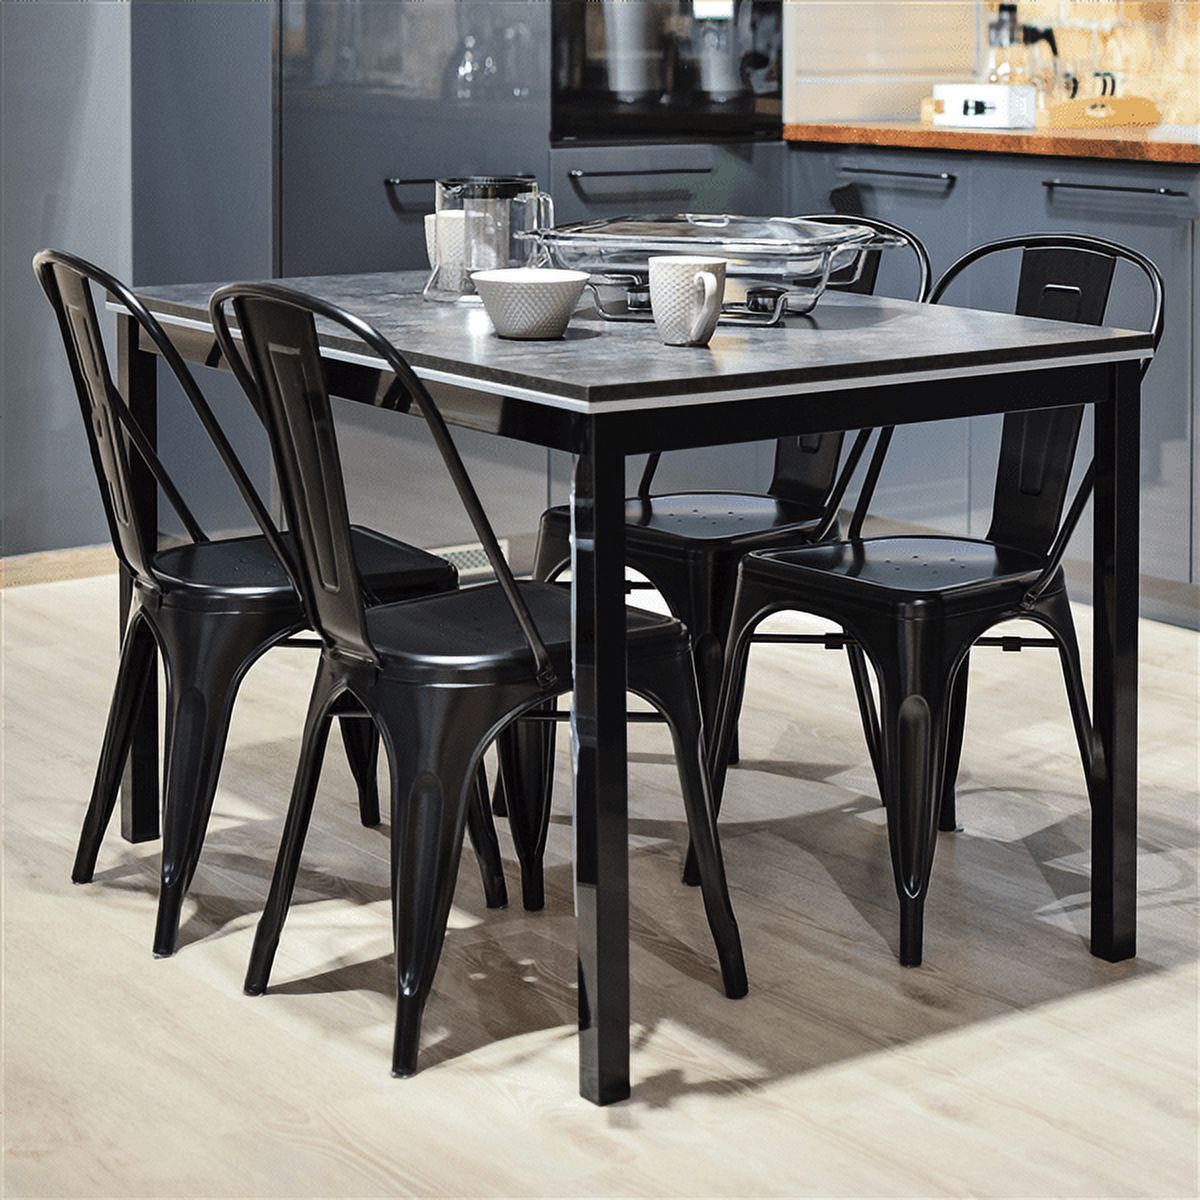 Alden Design Dining Chair, Set of 4, Black - image 3 of 7